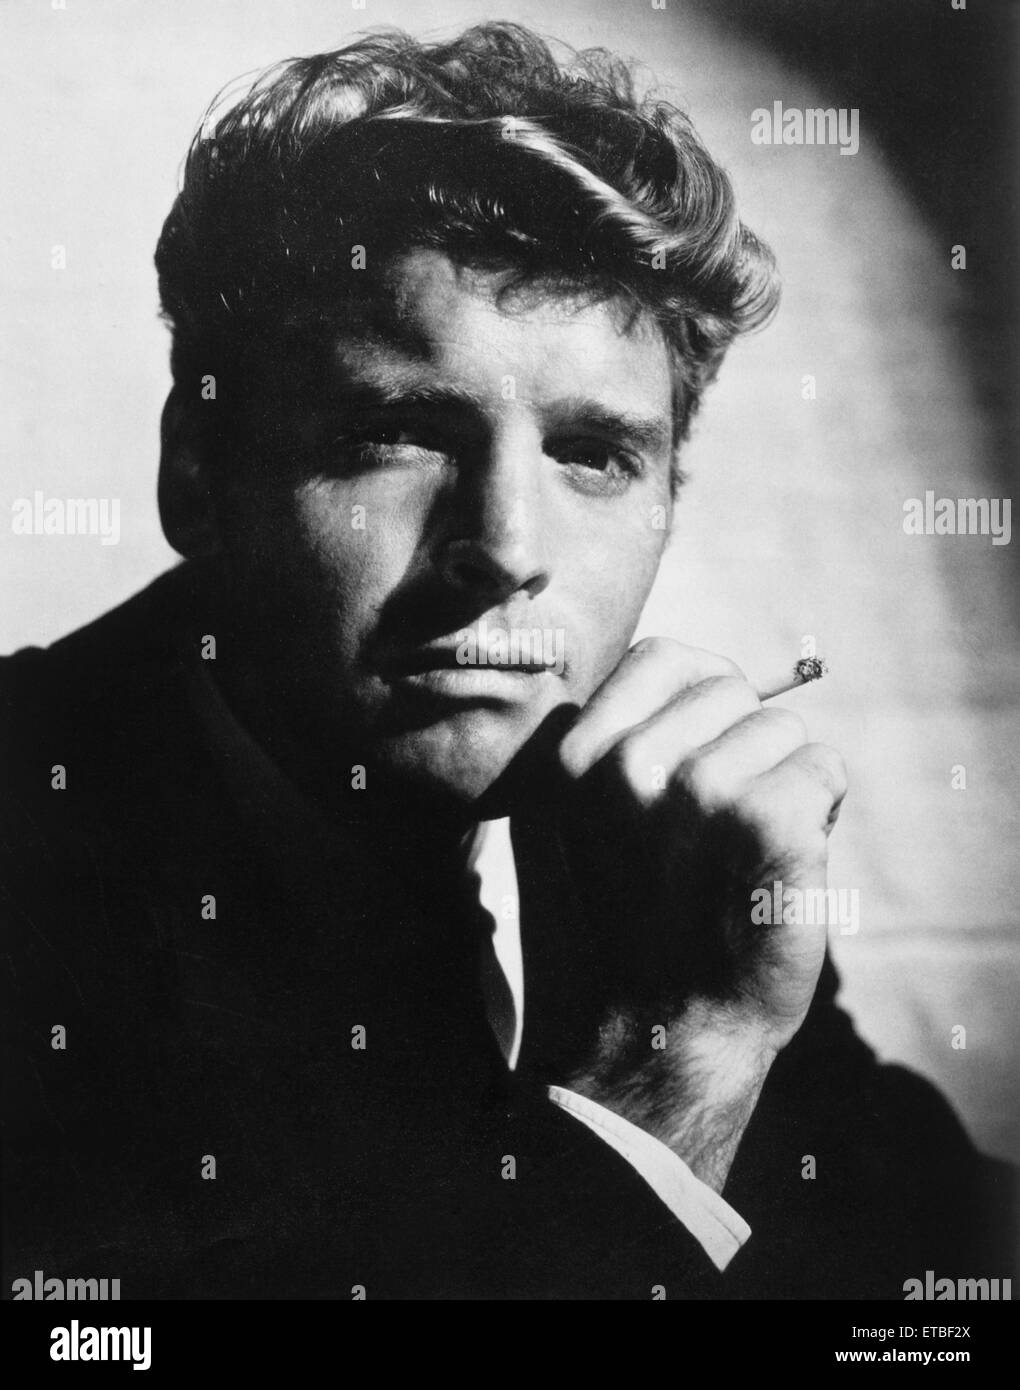 Actor Burt Lancaster, Portrait with Cigarette, 1951 Stock Photo